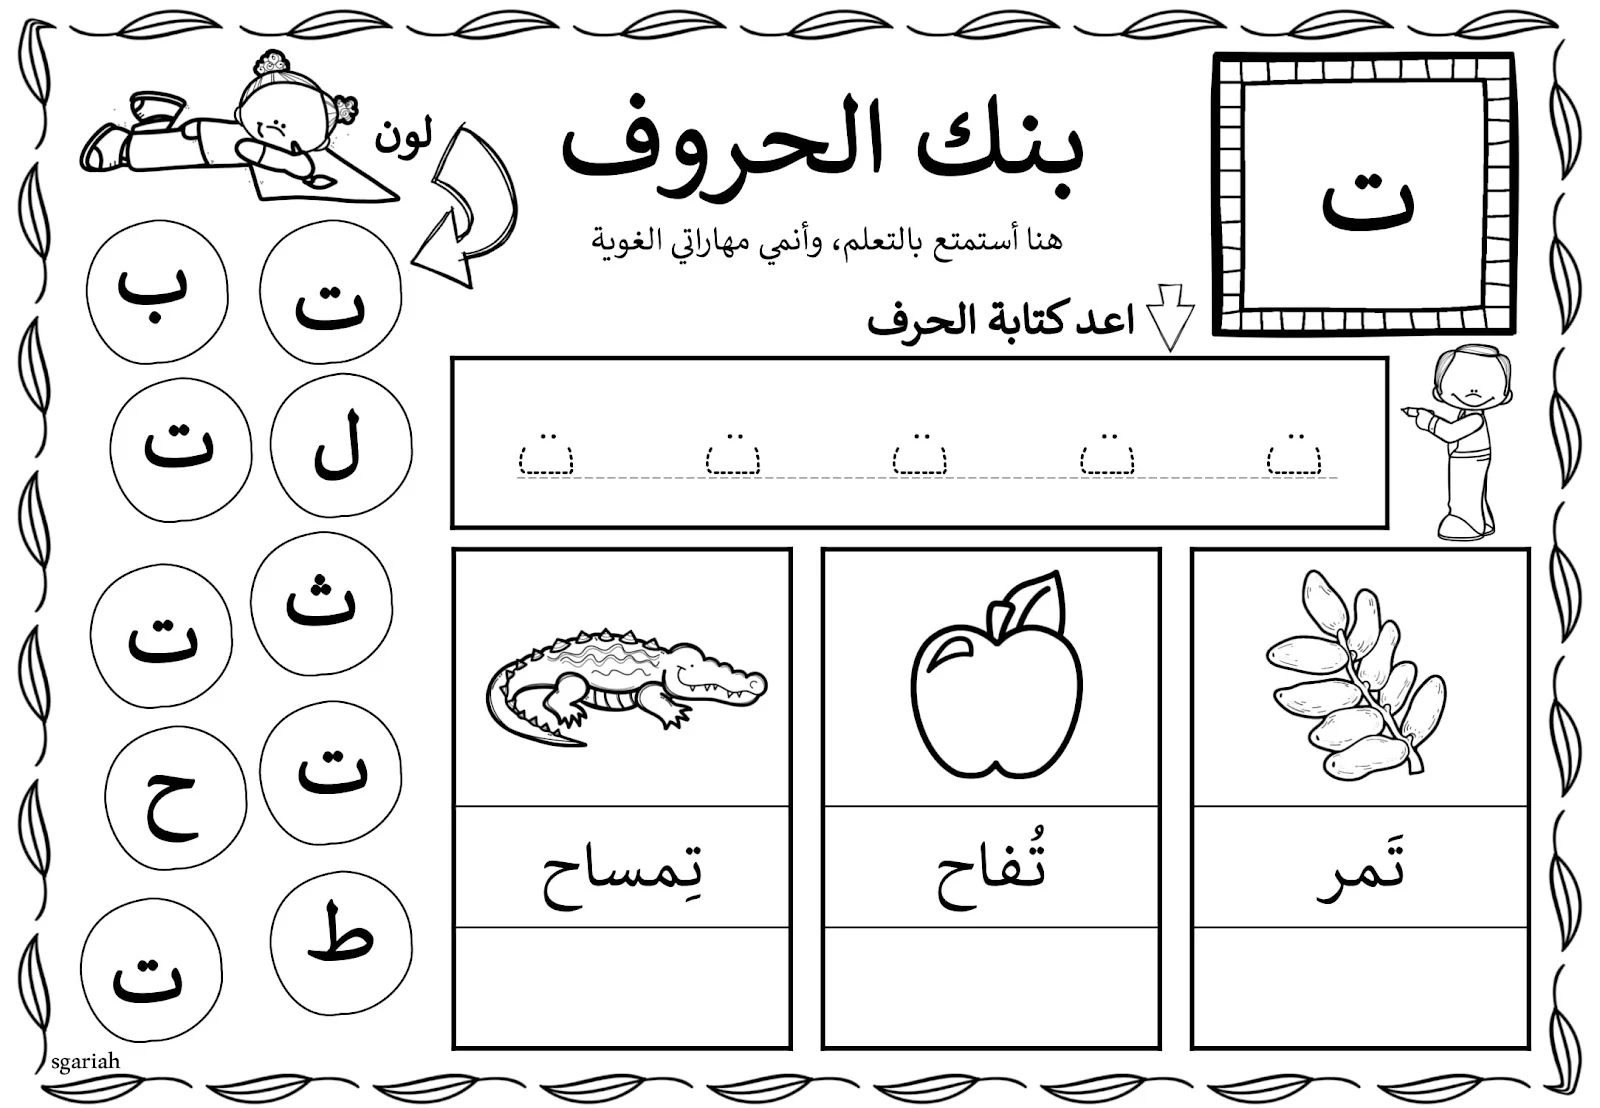 بنك الحروف لتعليم الحروف للاطفال جاهزة للطباعة مجانا pdf